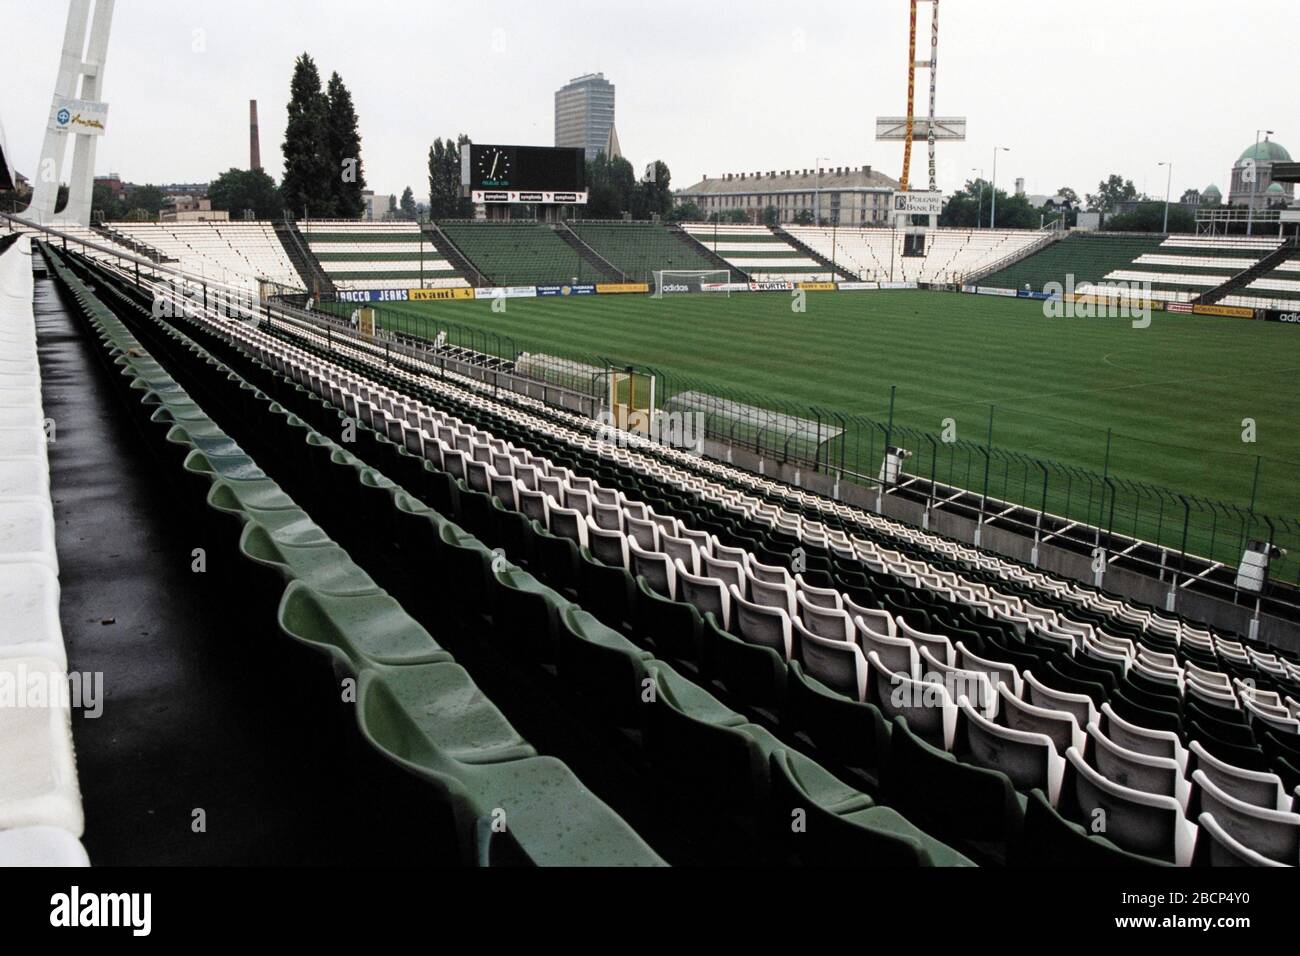 Ferencváros Stadion - Wikipedia